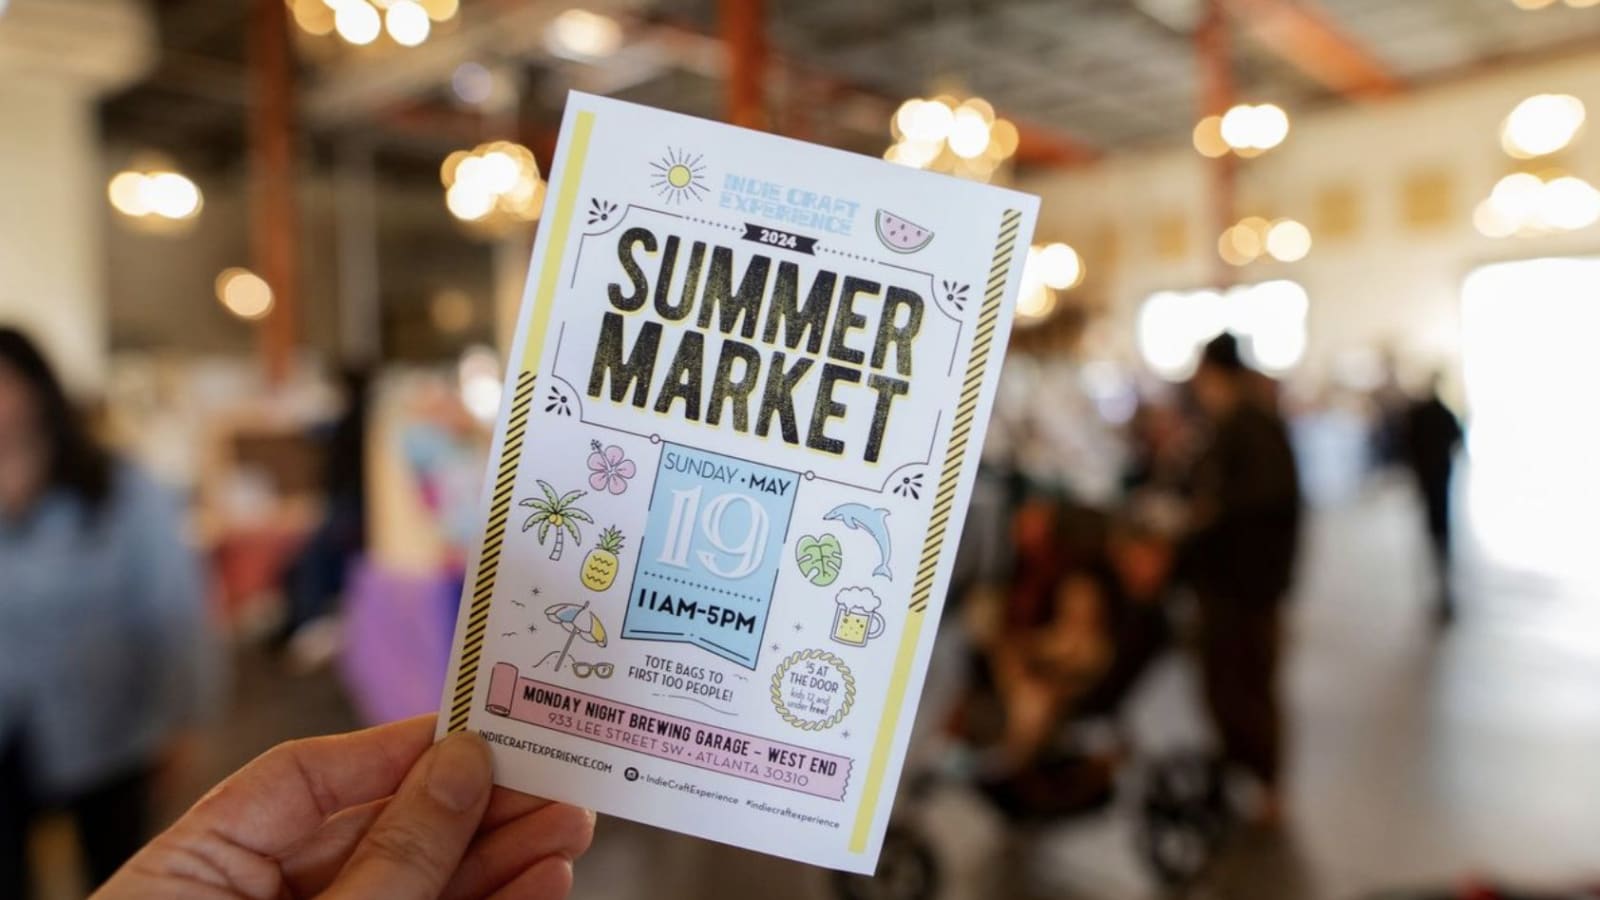 Indie Craft Experience Summer Market